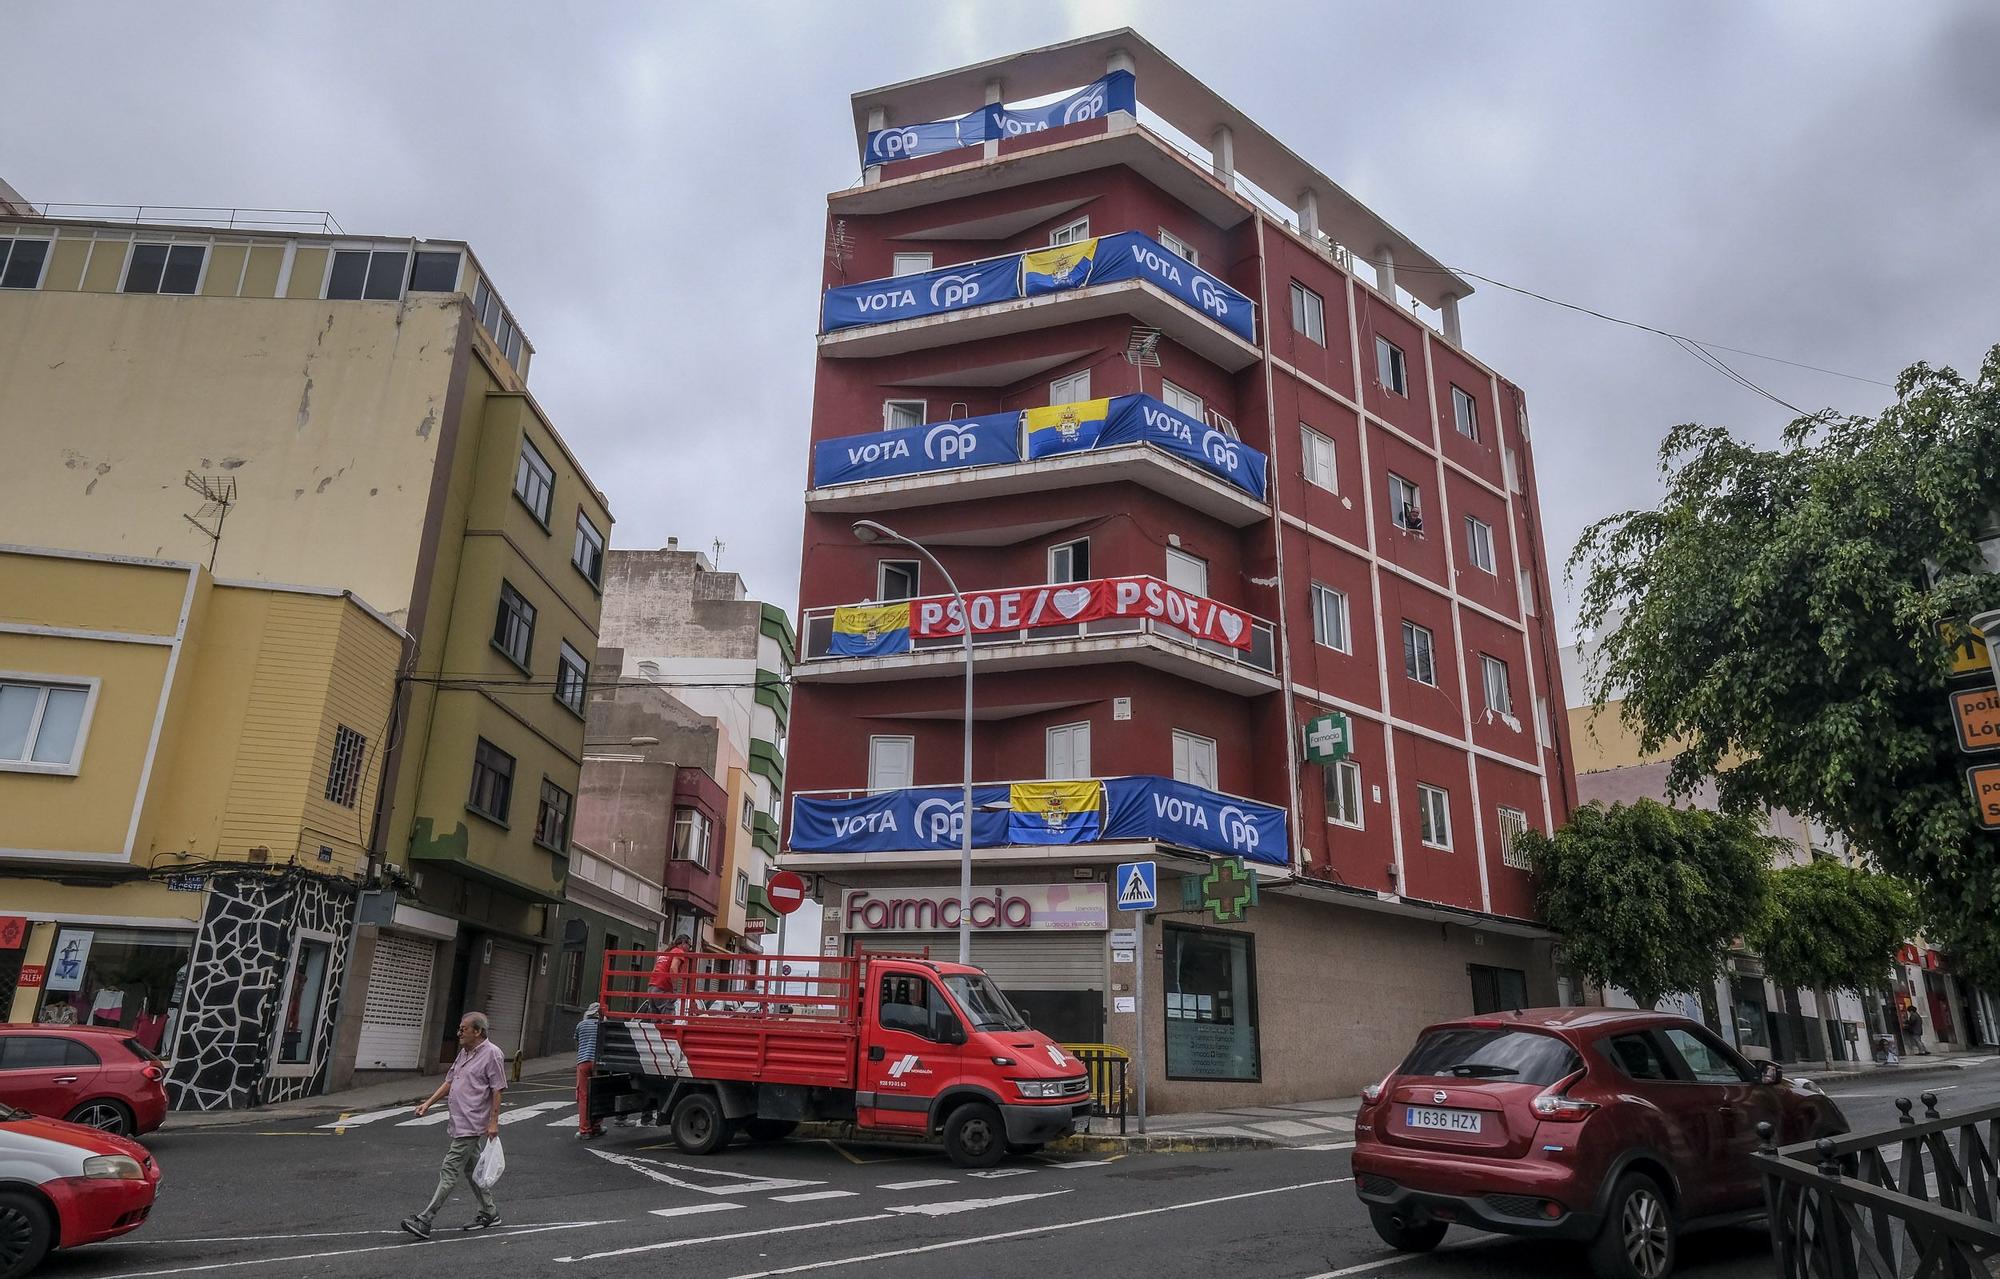 'Guerra' de lonas electorales en un edificio de Las Palmas de Gran Canaria